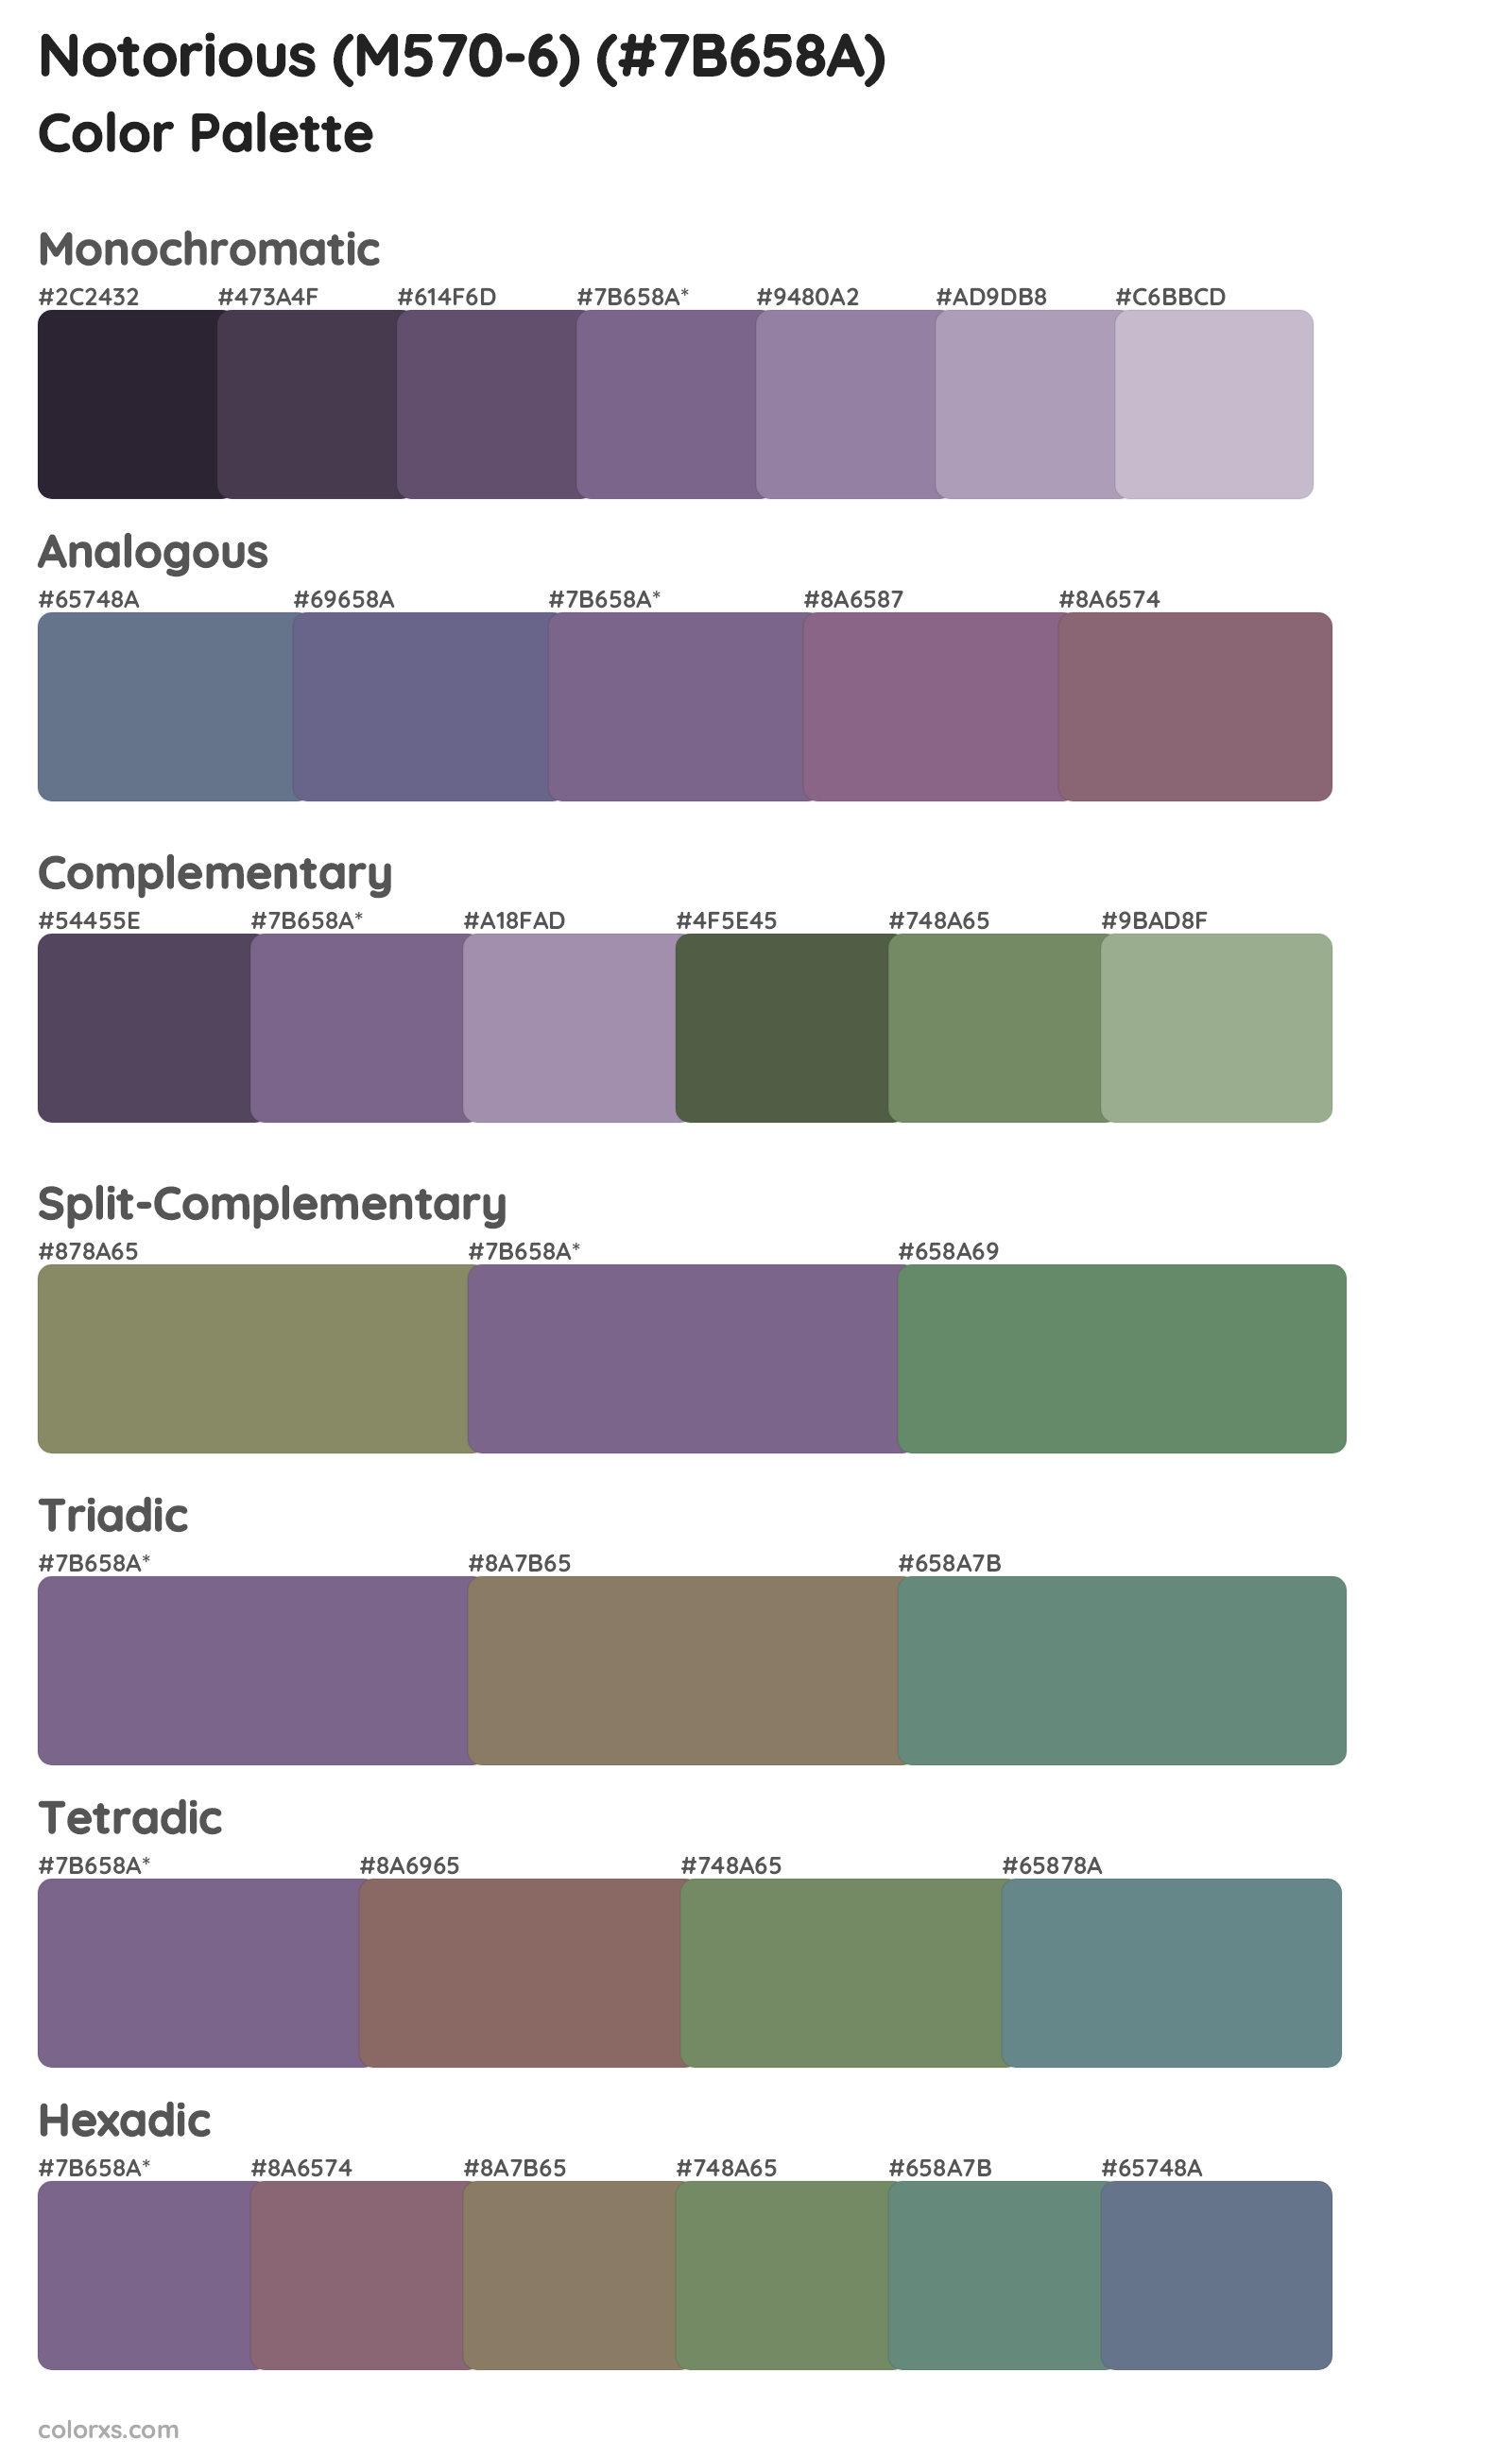 Notorious (M570-6) Color Scheme Palettes